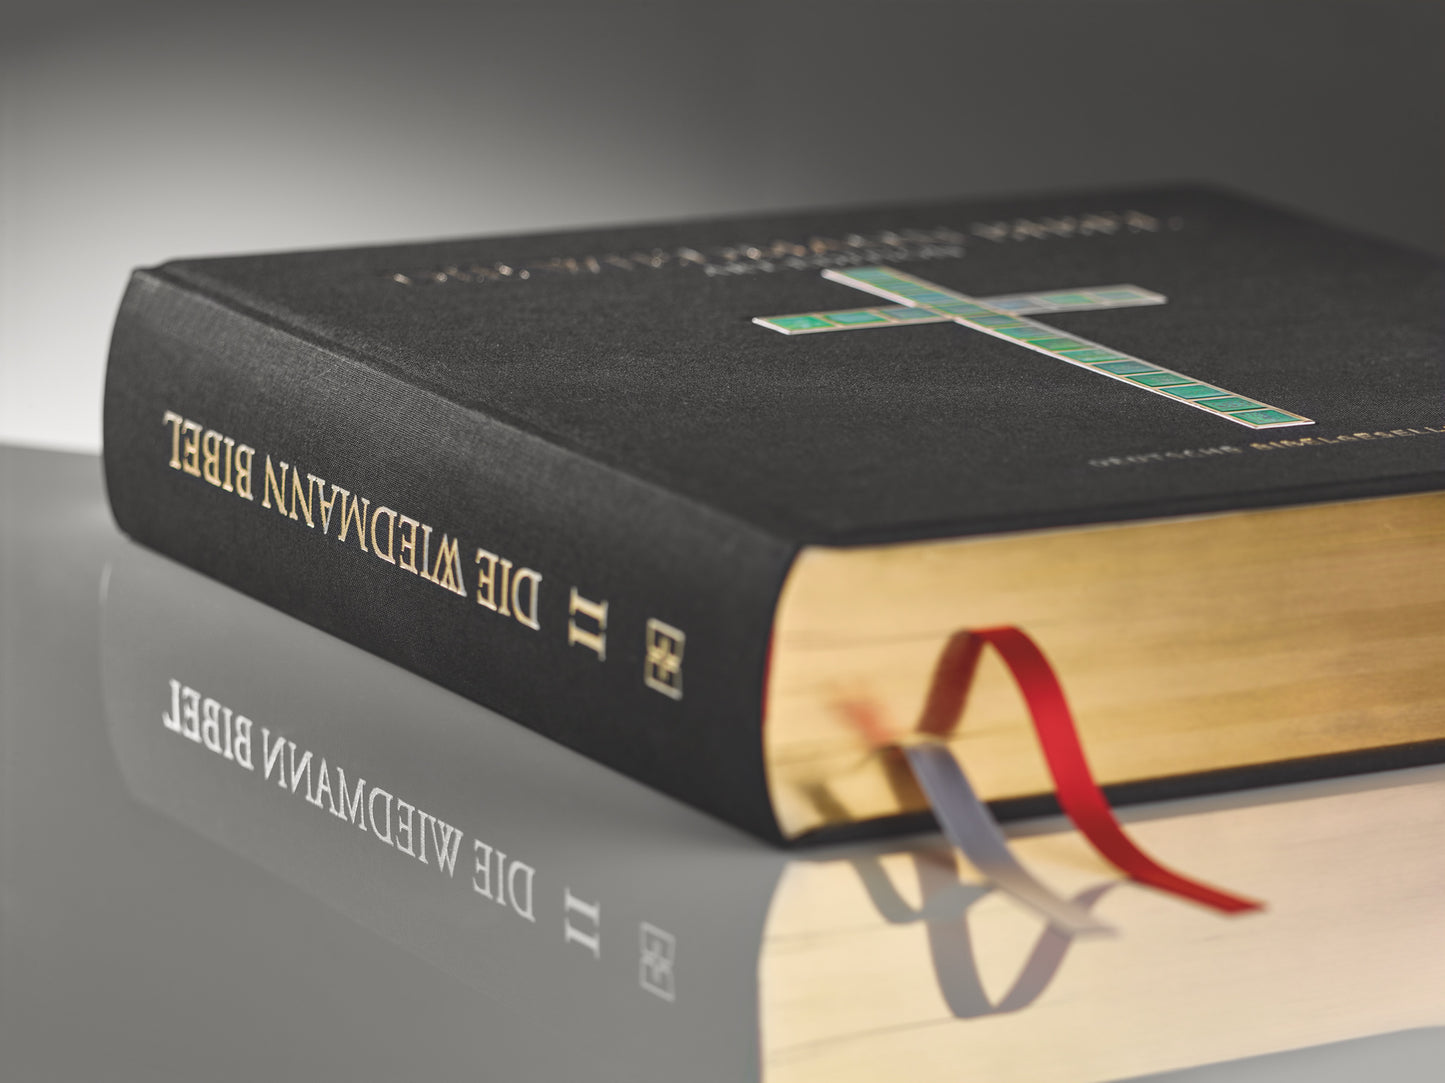 Die Wiedmann Bibel - Art Edition Schwarz